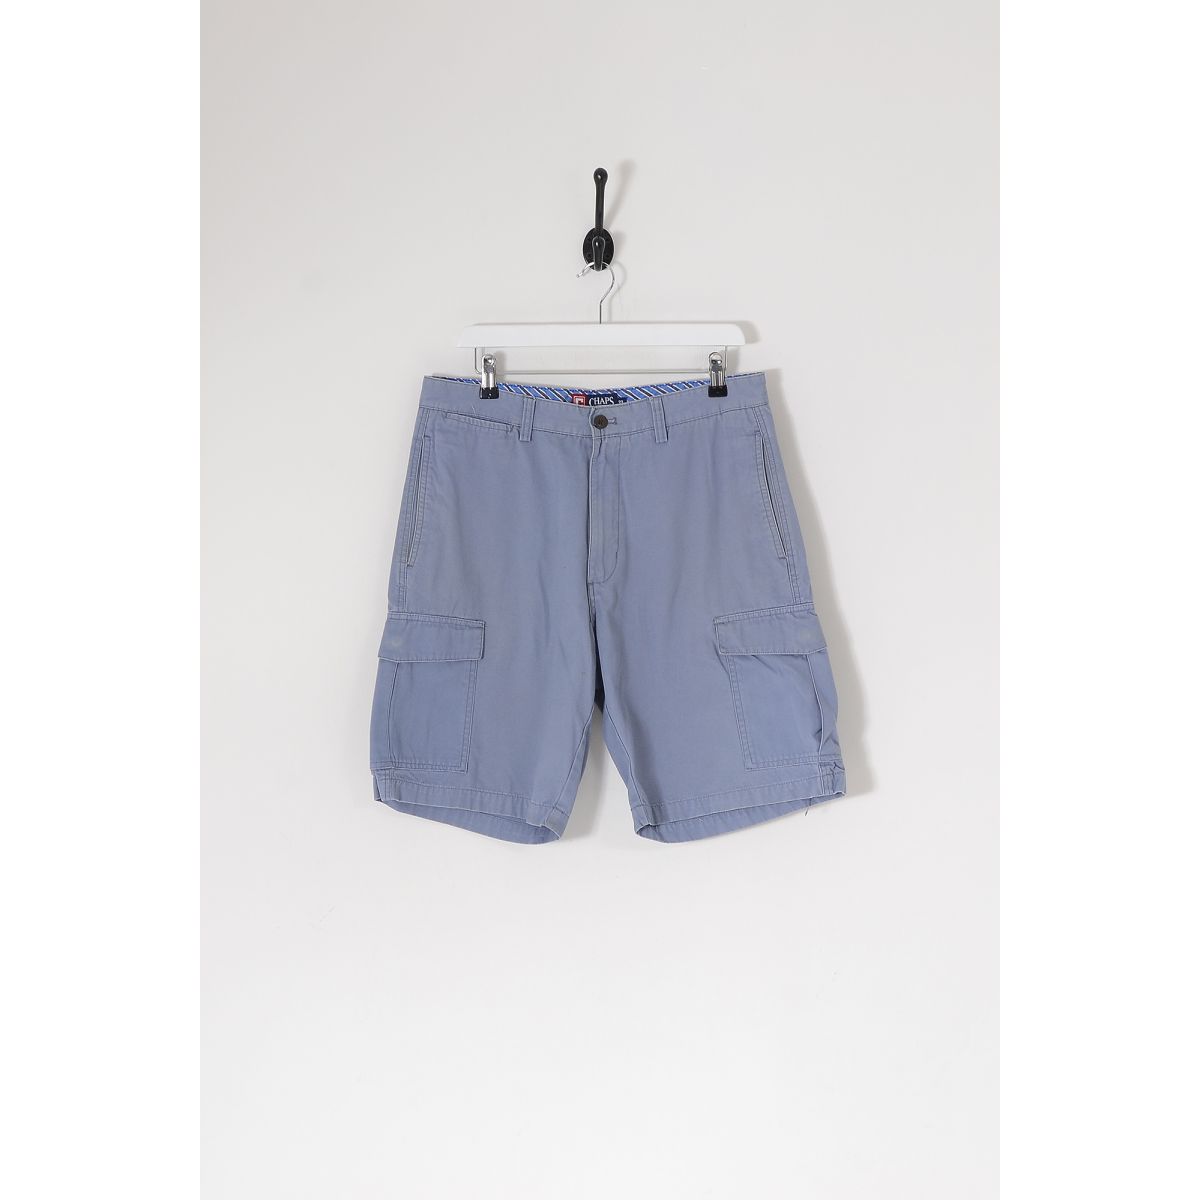 Vintage RALPH LAUREN CHAPS Combat Shorts Grey Blue W33